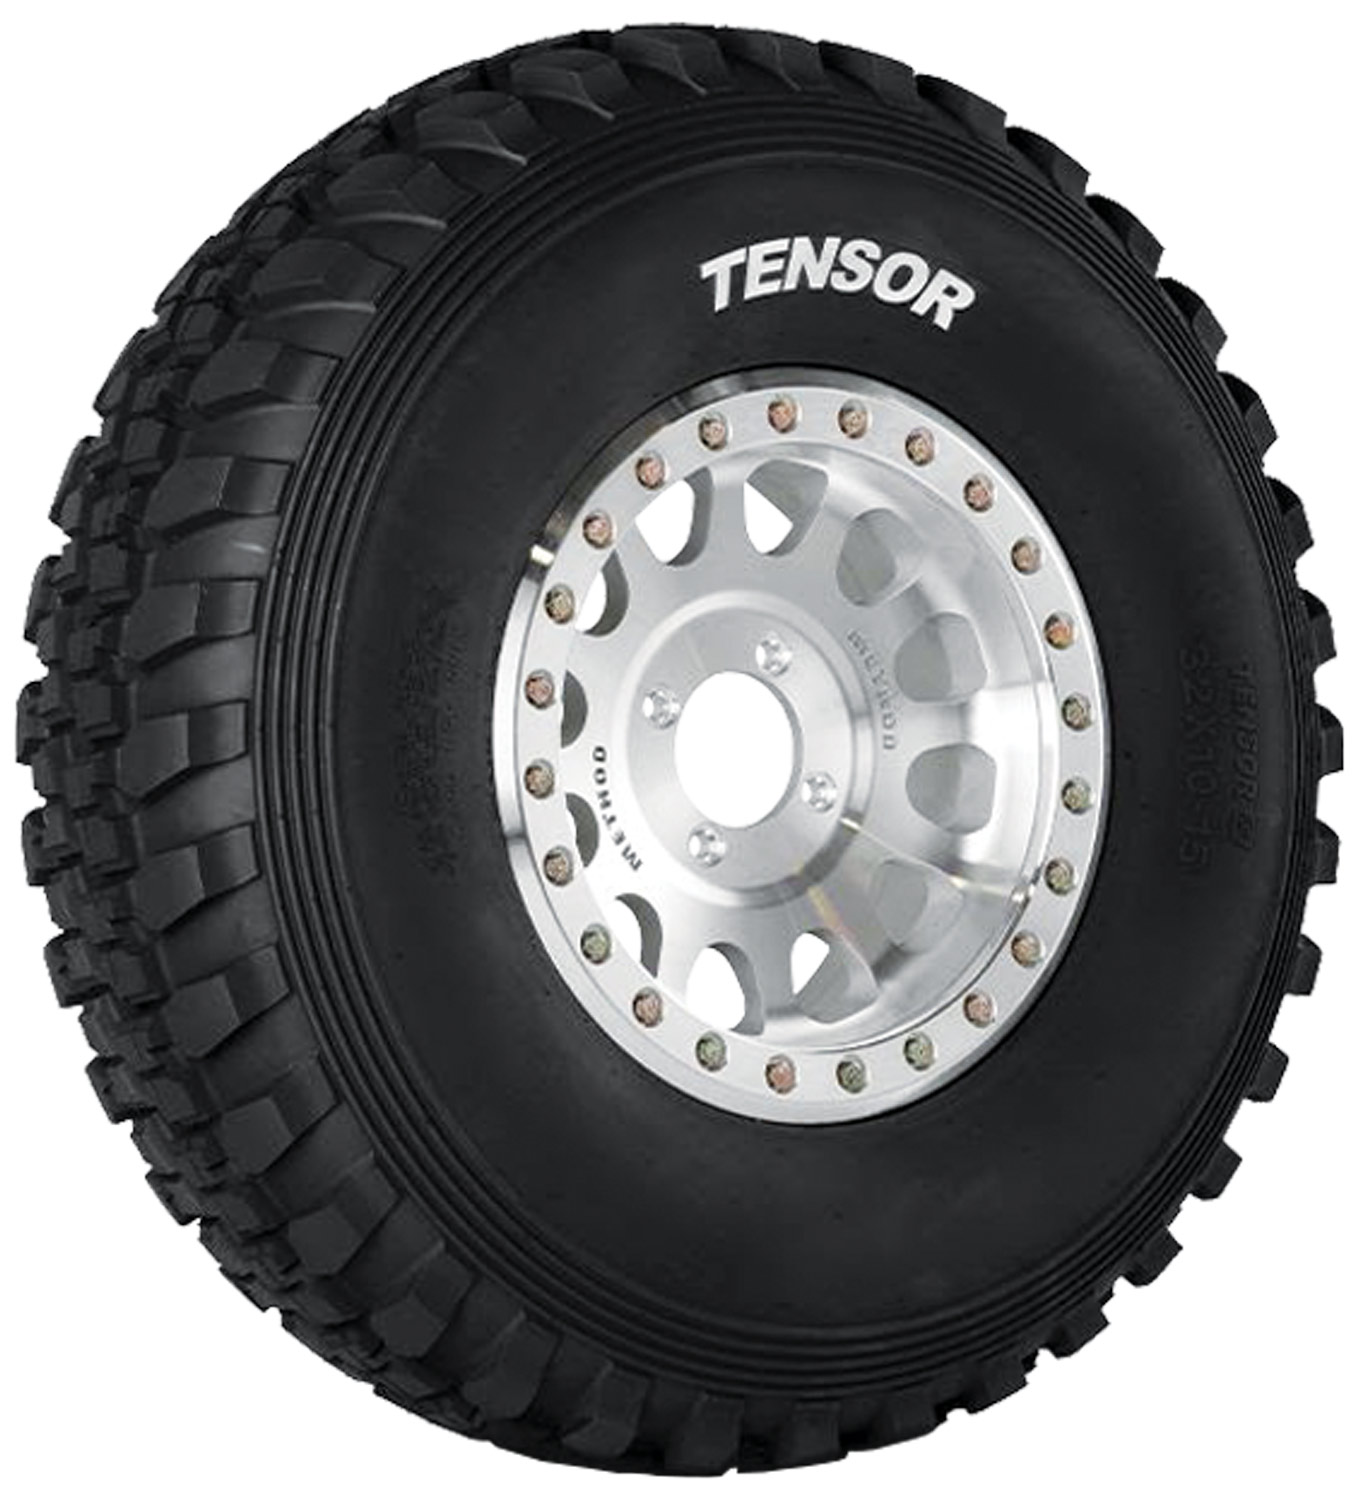 a Desert Series (DS) tire from Tensor Tire